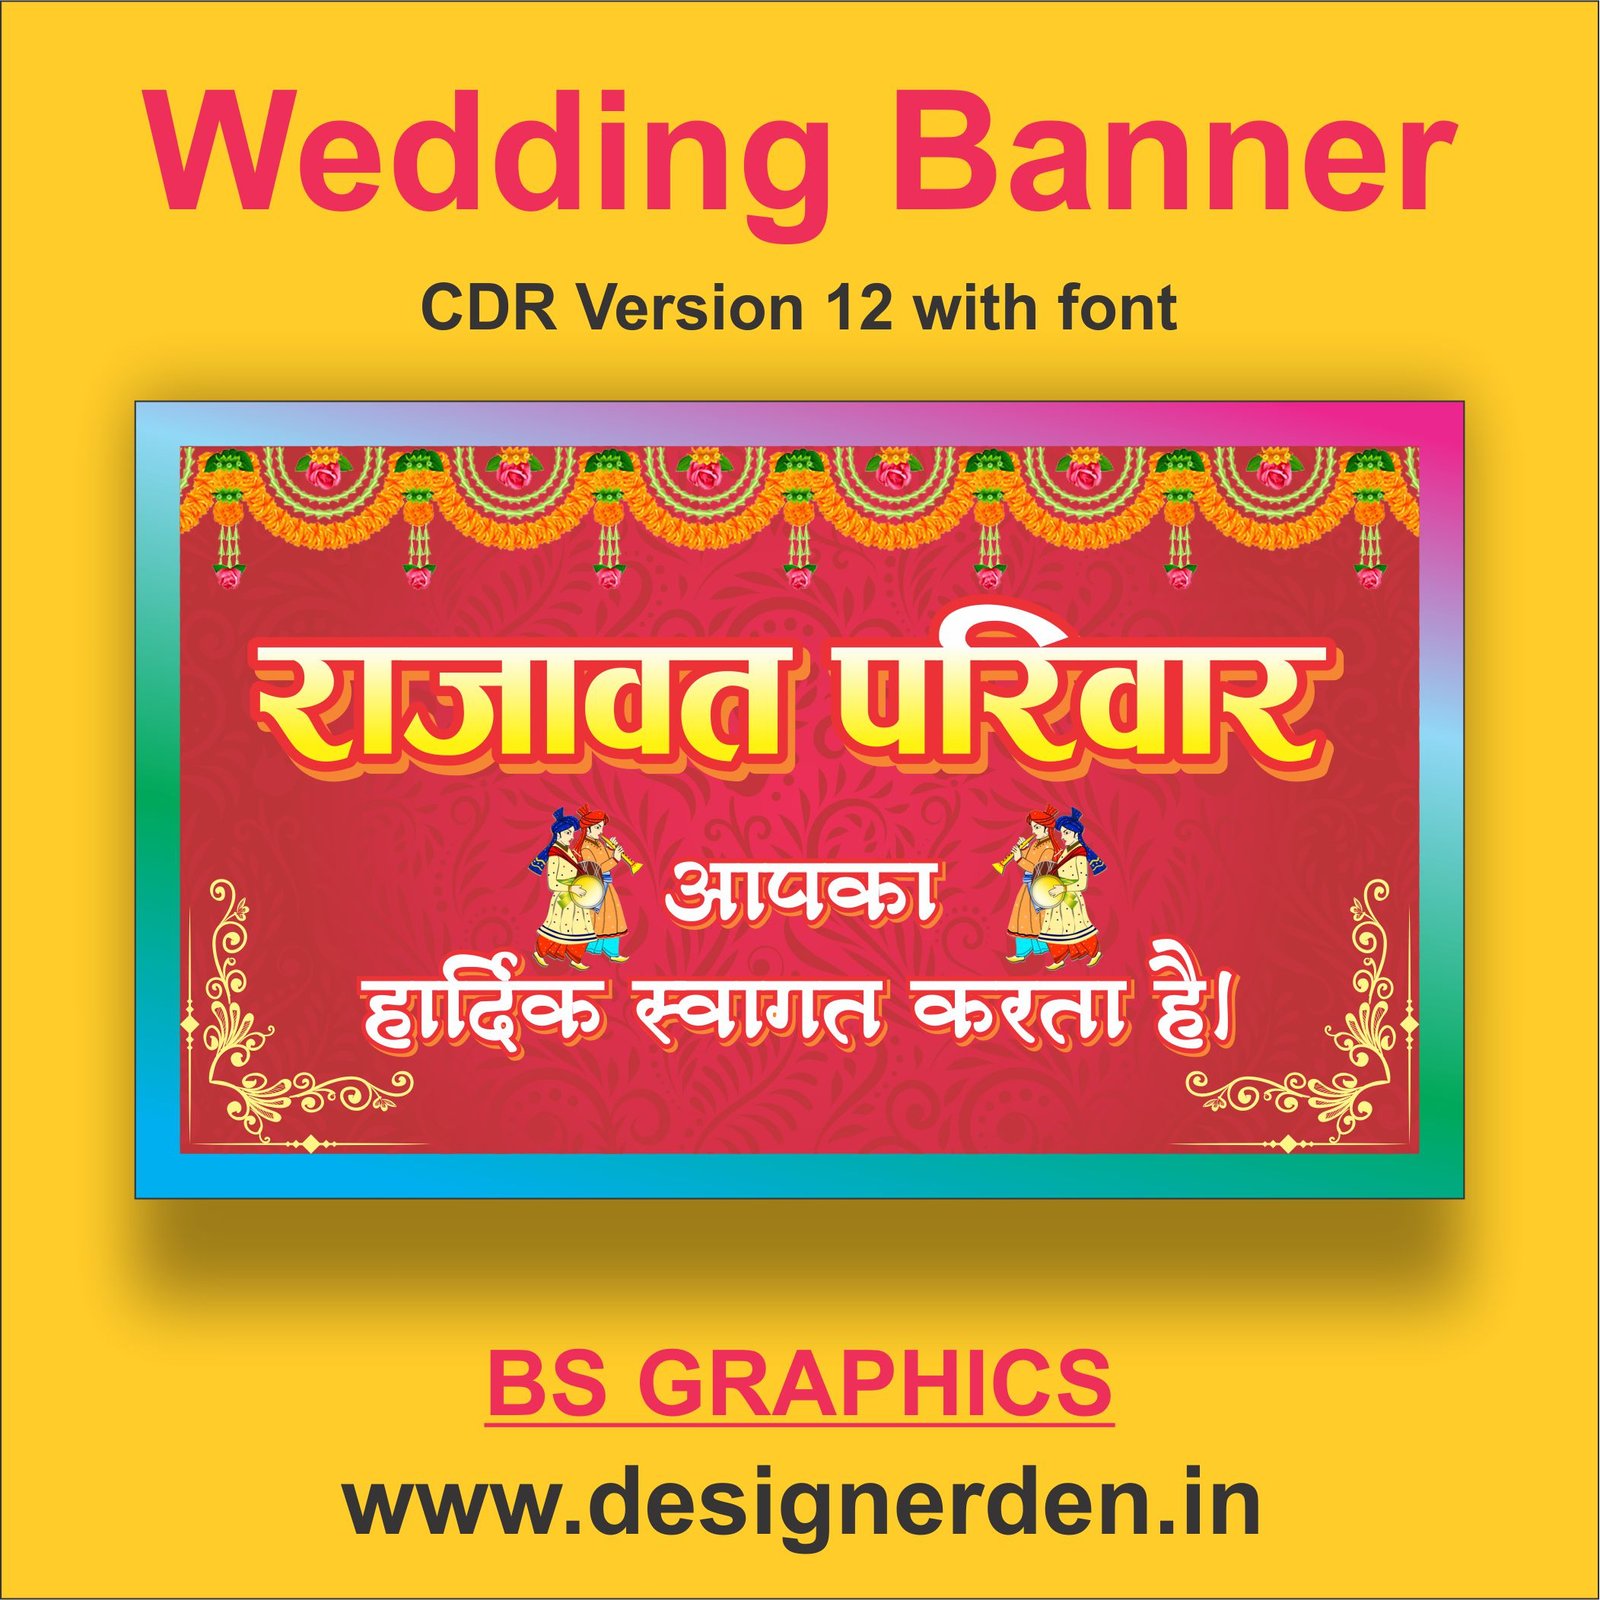 Wedding Banner Cdr File - Designerden.in